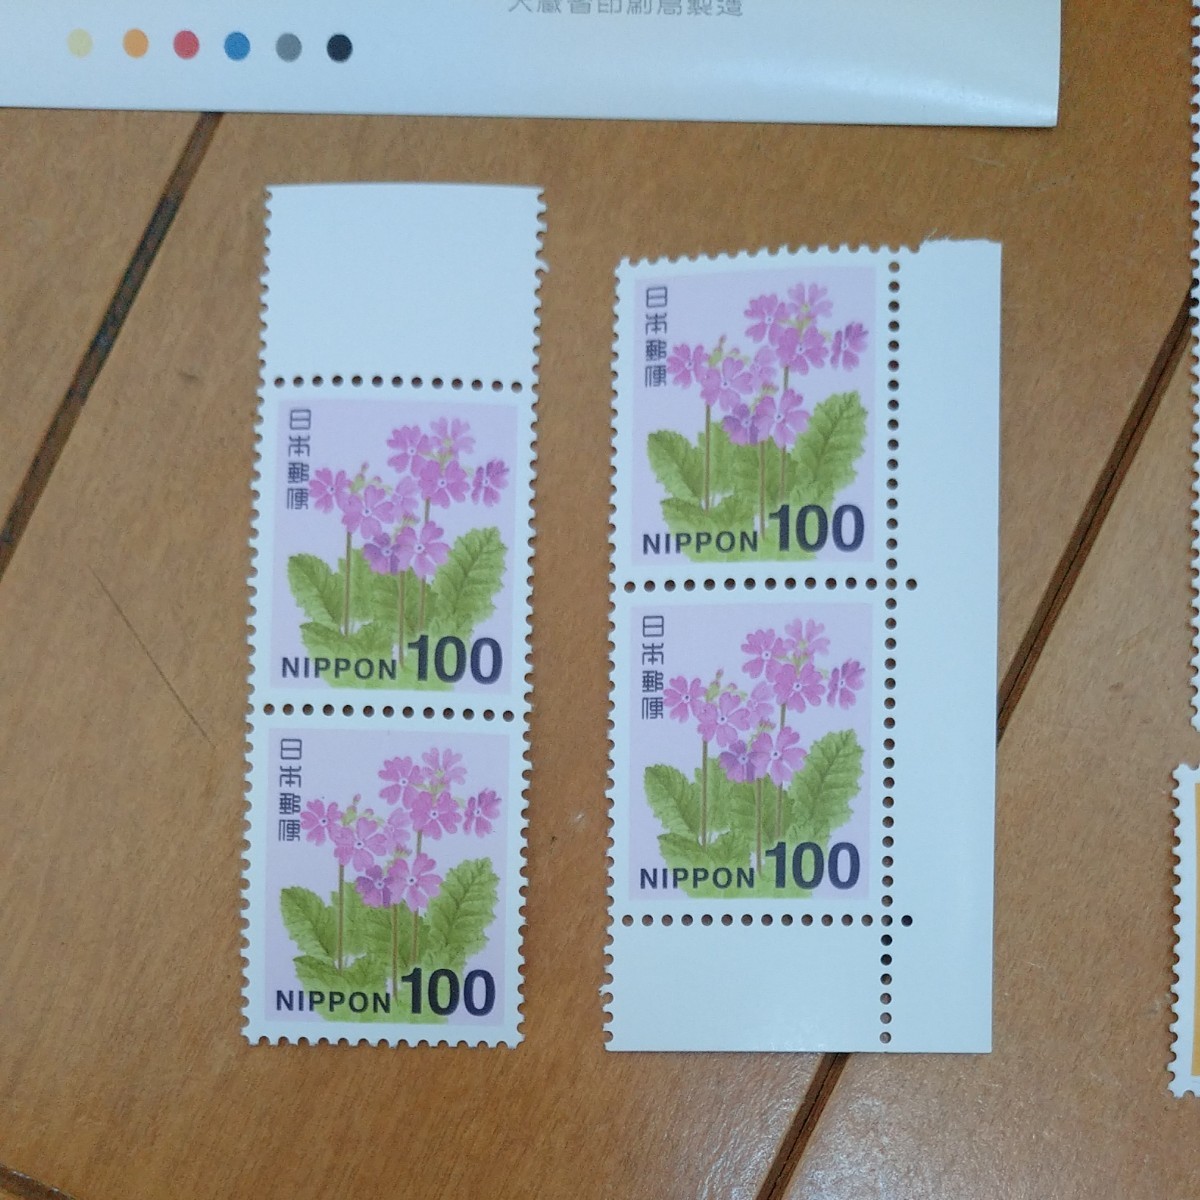 切手趣味週間 1987年 1988年 奥の細道シリーズ 切手シート ばら バラ 切手アソート